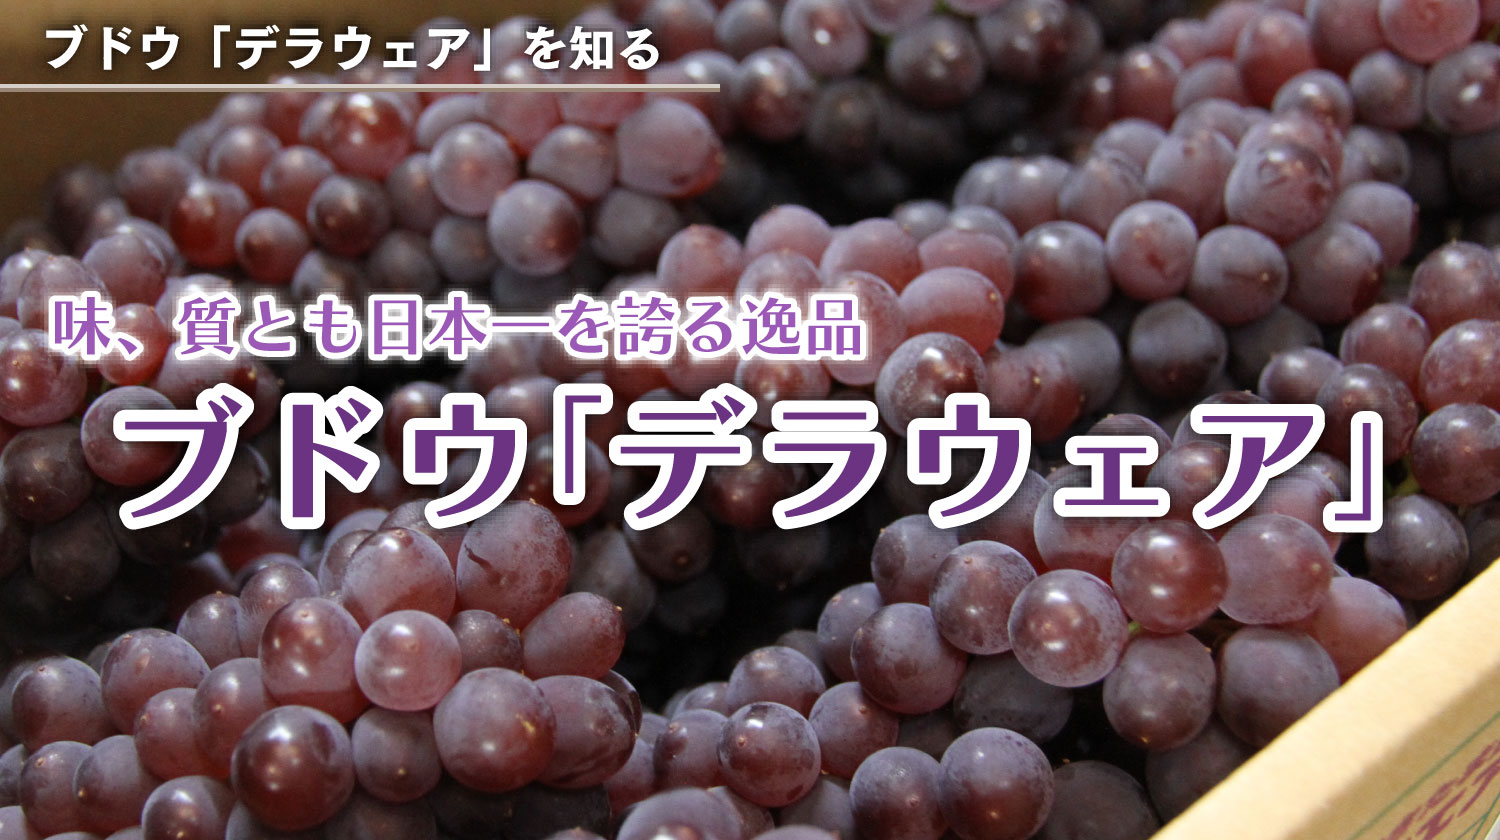 味、質とも日本一を誇る逸品。ブドウ「デラウェア」